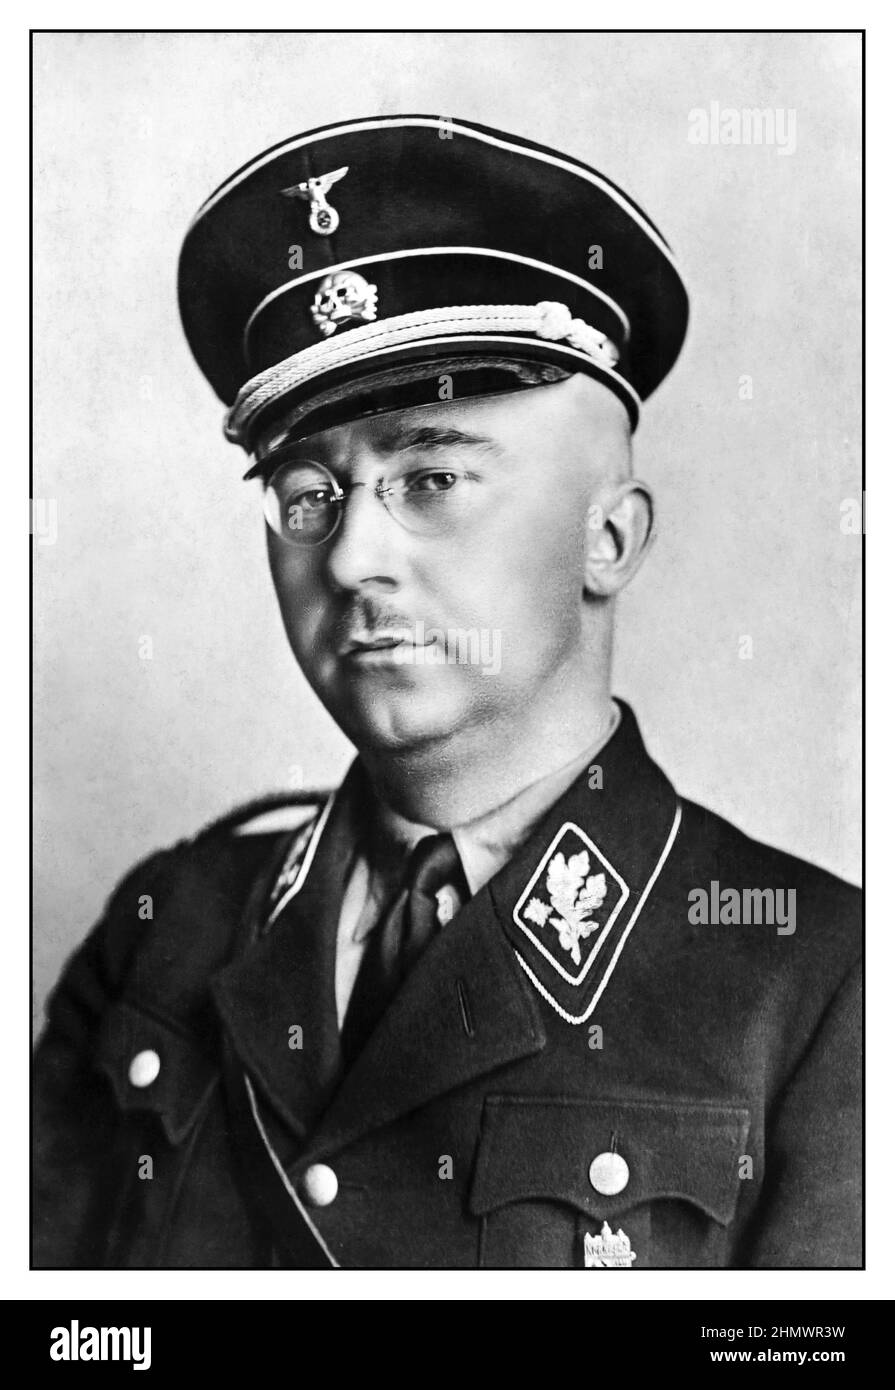 1940 WW2 Heinrich Himmler portrait officiel en uniforme Waffen SS politicien socialiste national allemand commandant militaire nazie police secrète. Himmler a été l'un des hommes les plus puissants de l'Allemagne nazie et l'une des personnes les plus directement responsables de l'Holocauste. A facilité le génocide à travers l'Europe et l'Est. S'est suicidé en 1945 après avoir été capturés fuyant sous une autre identité. Banque D'Images